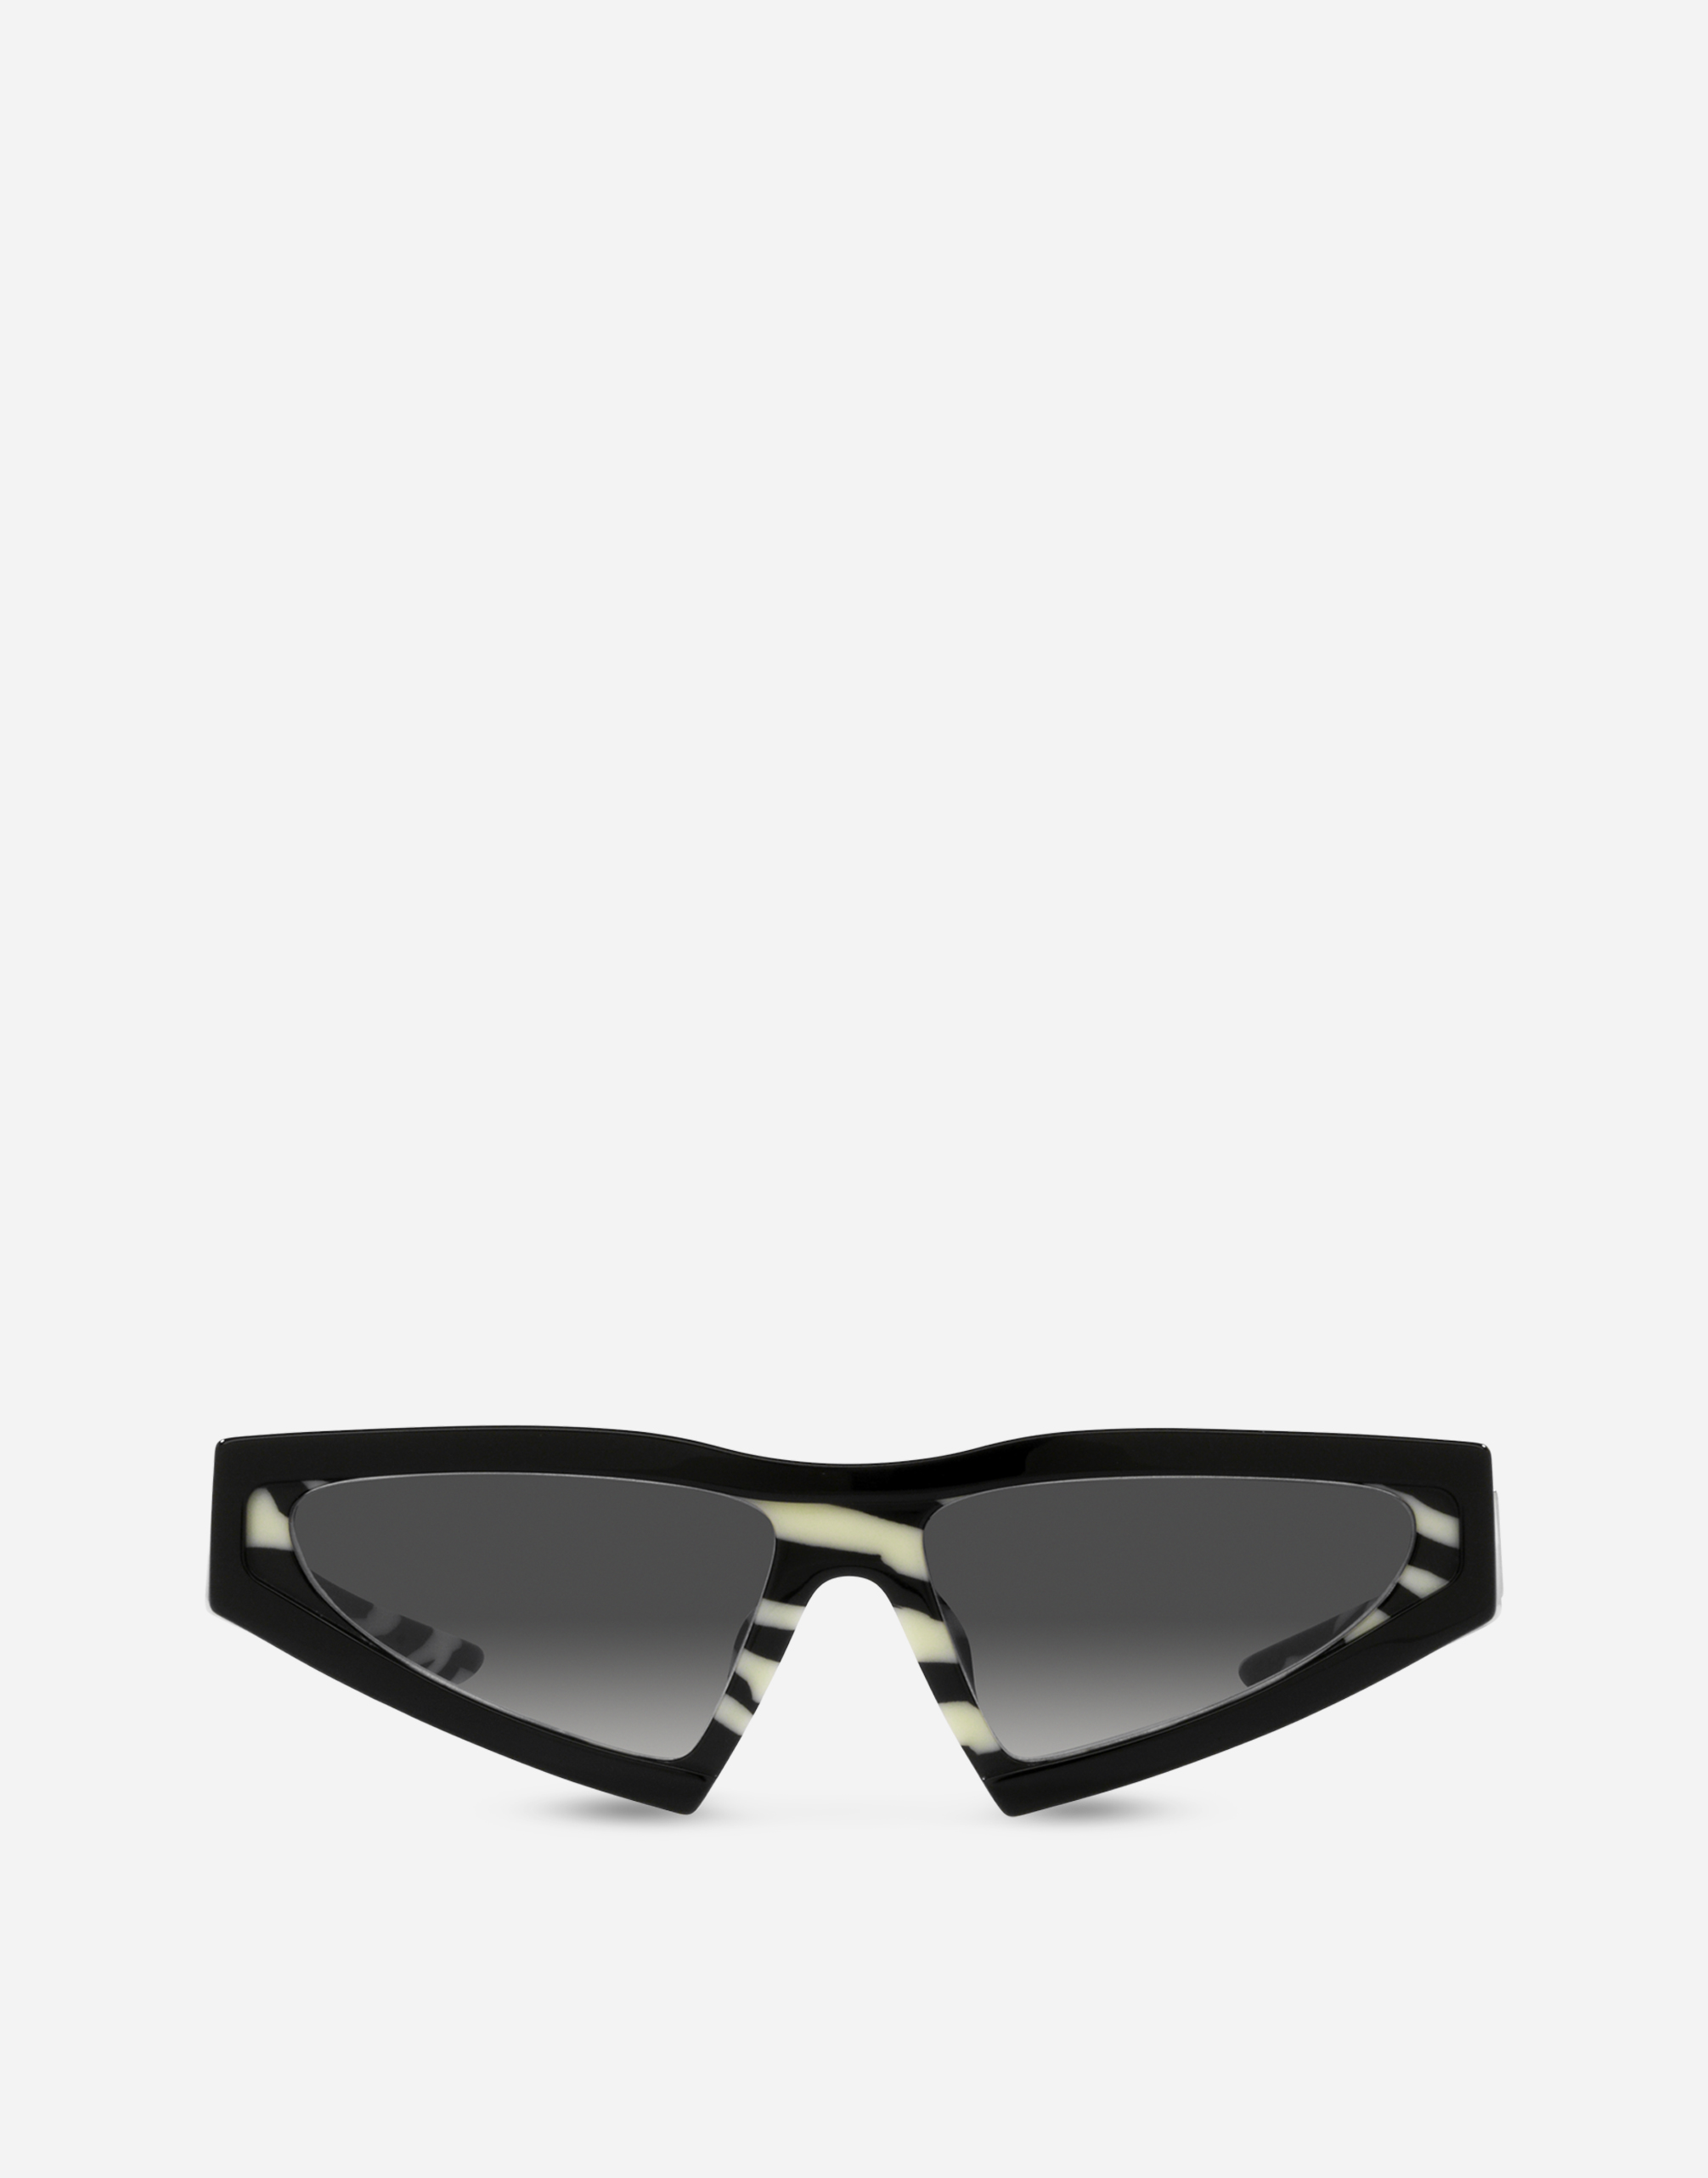 Zebra sunglasses in black & zebra print